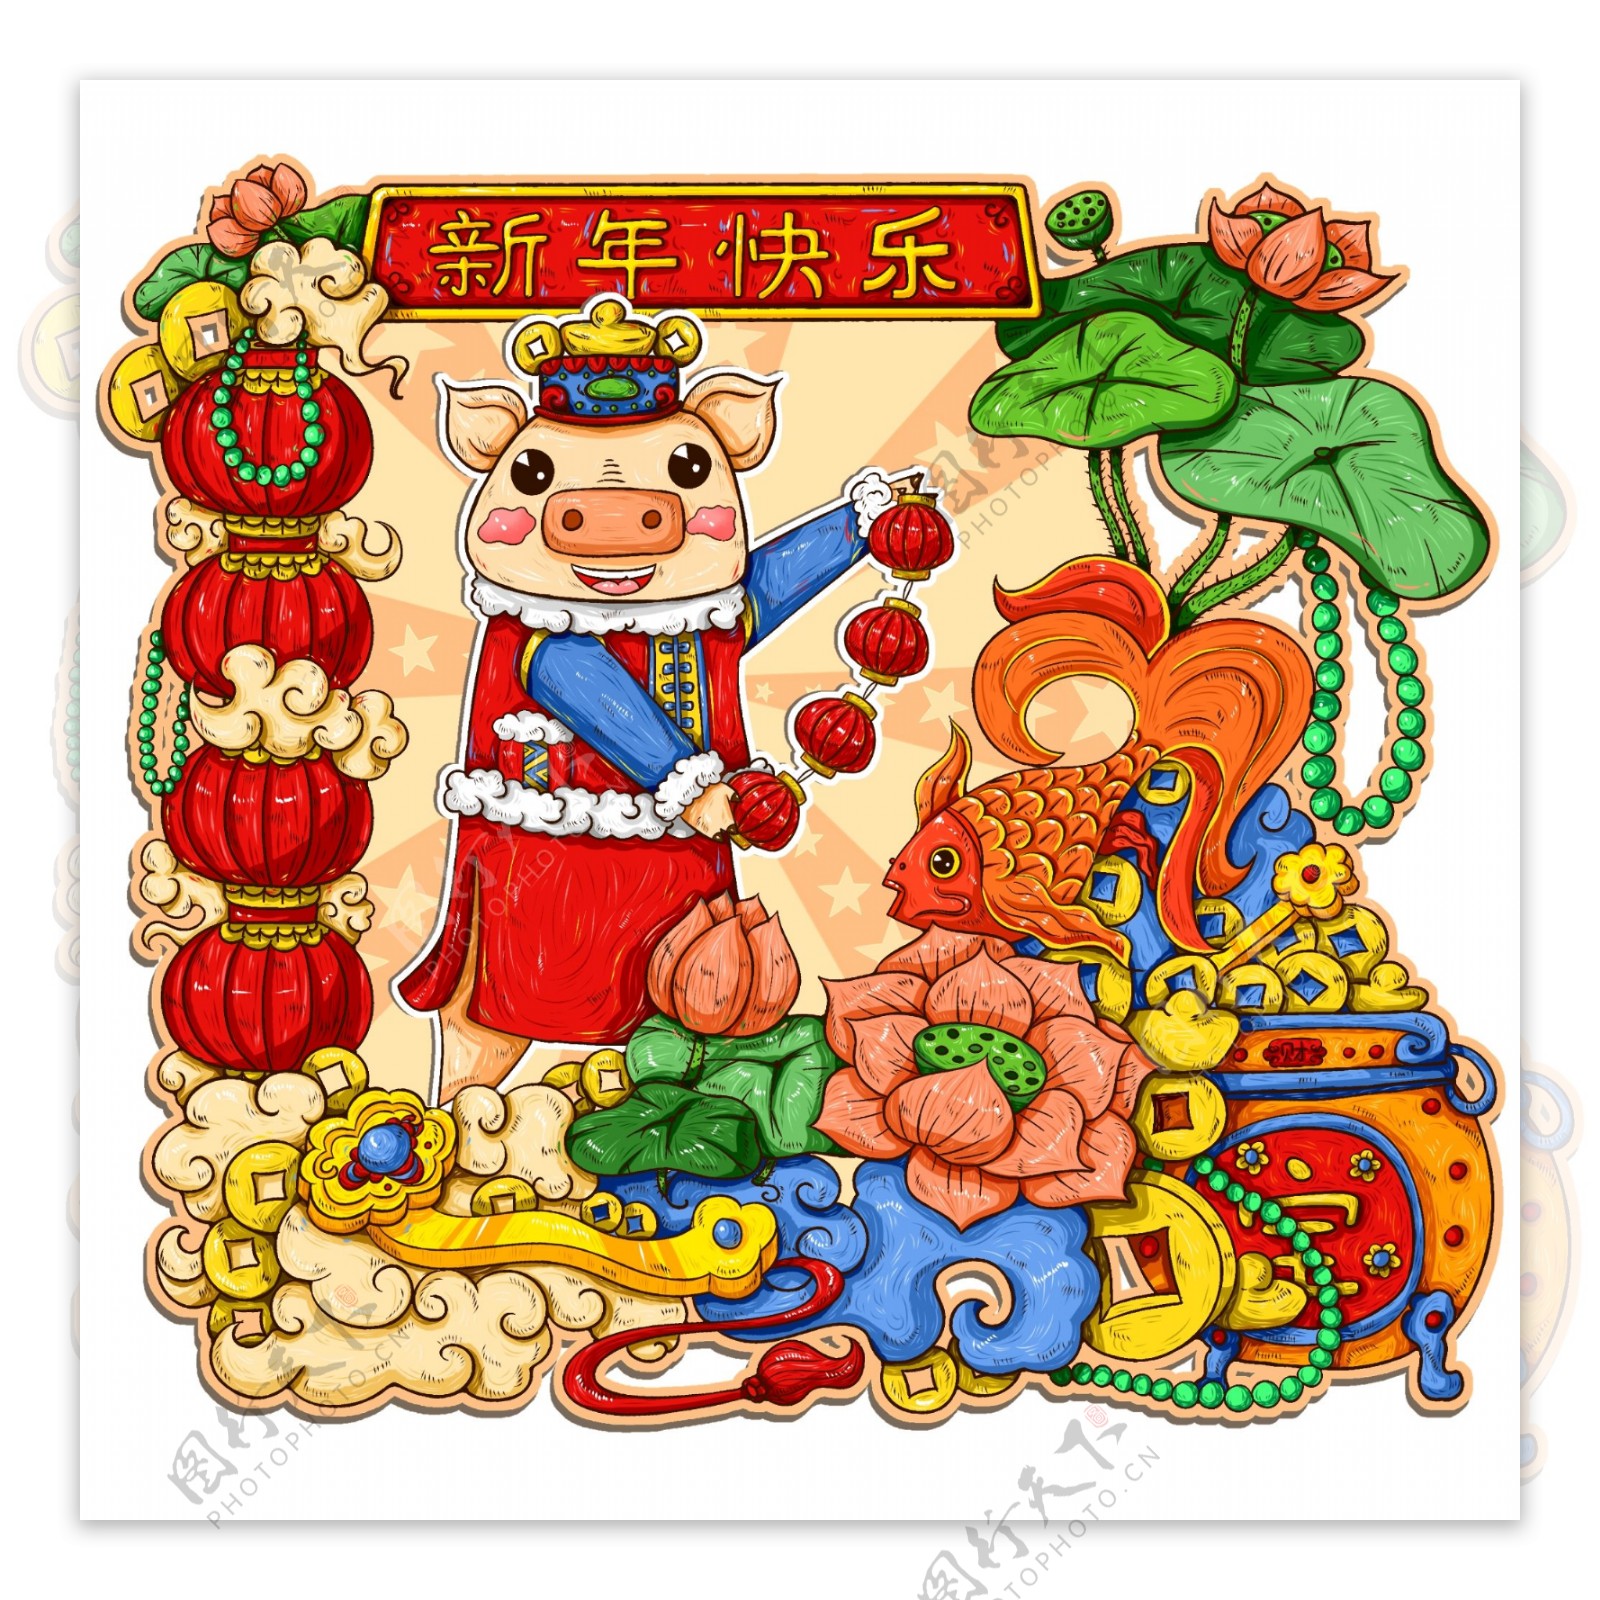 原创手绘中国风年画新年快乐猪年2019